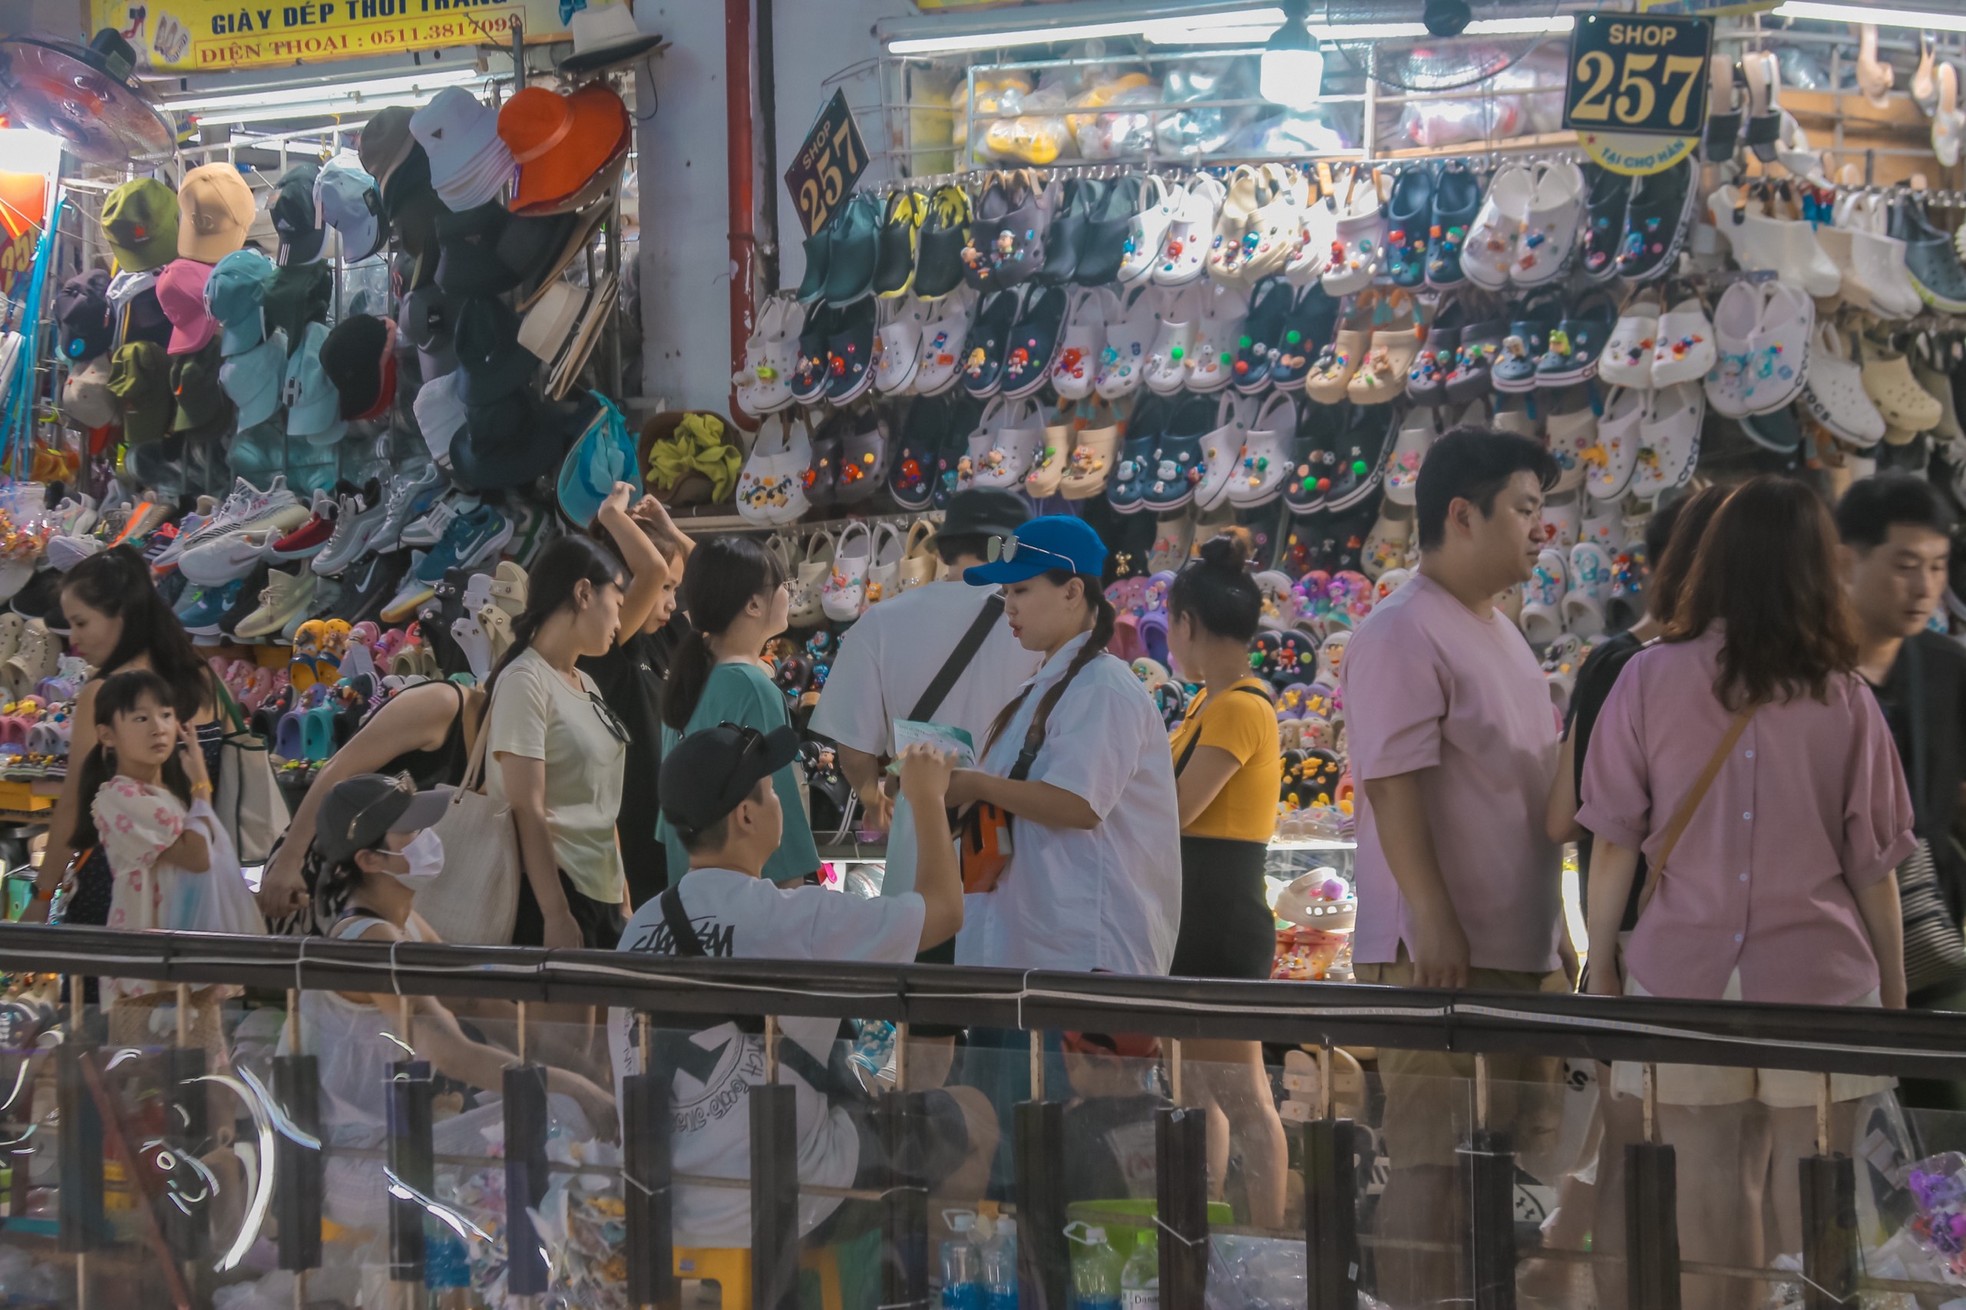 Chợ truyền thống lâu đời nhất Đà Nẵng đông nghịt du khách - Ảnh 5.